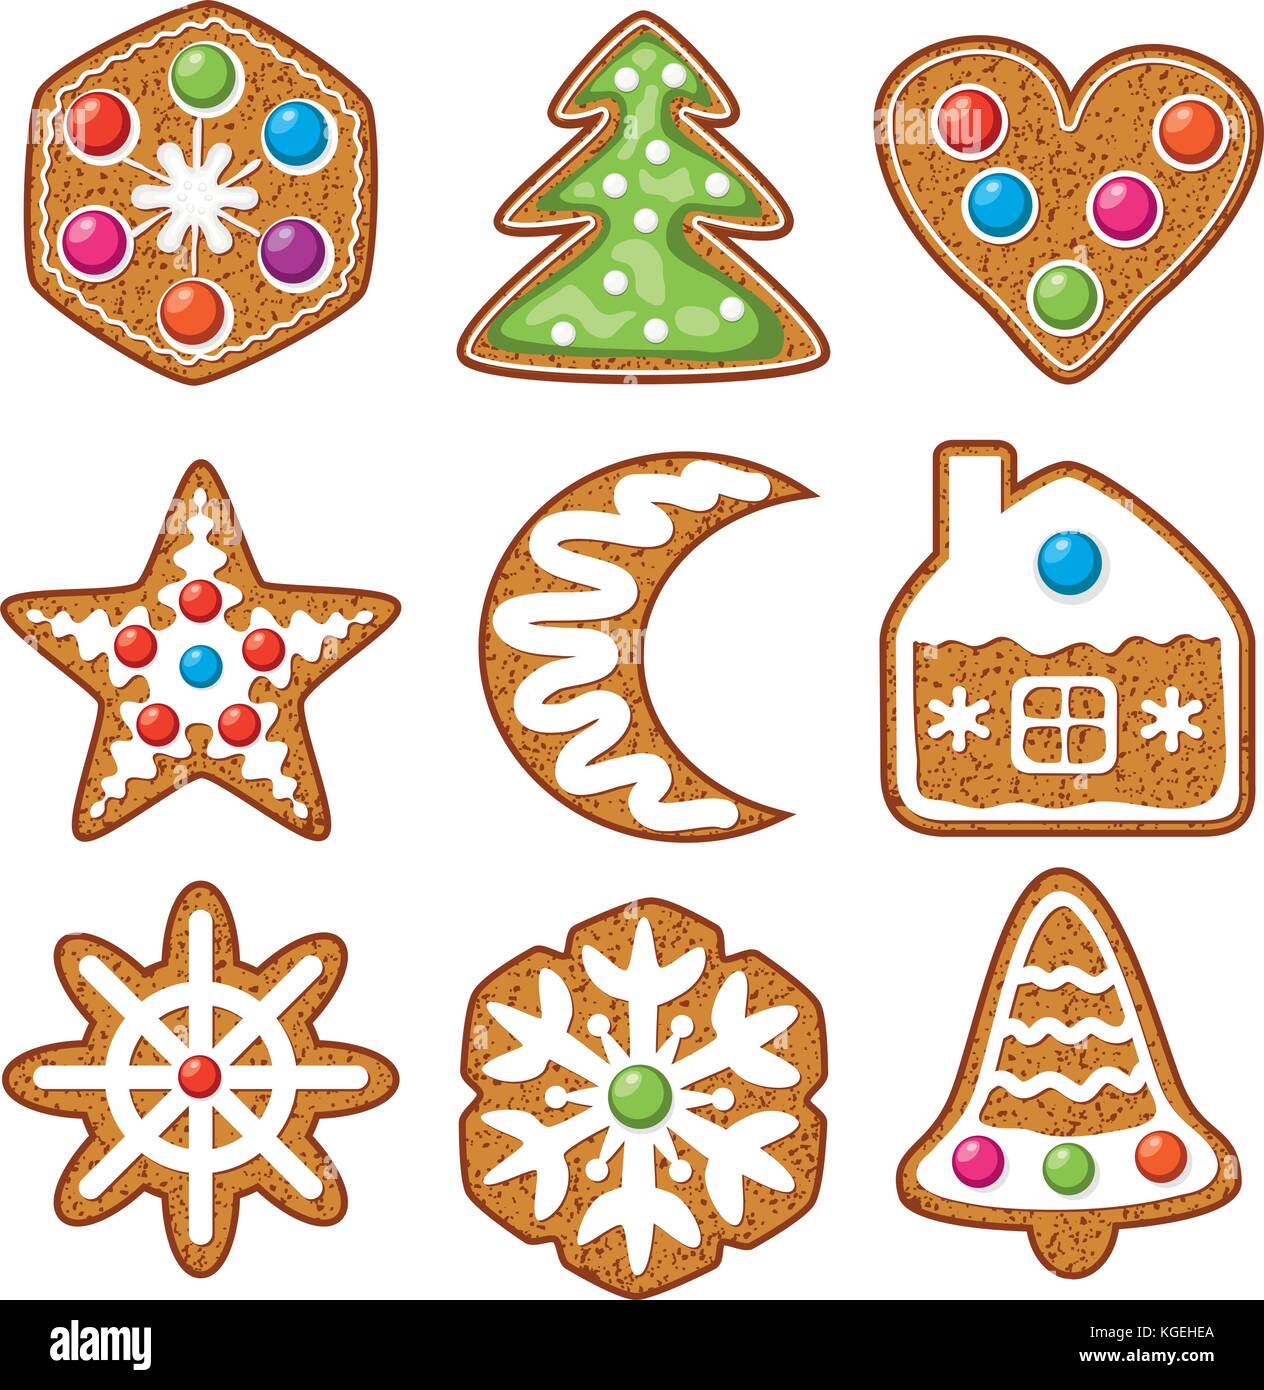 Vektor einrichten von bunten Weihnachten Lebkuchen Cookies: Baum, Herz, Stern, Mond, Haus, Blume und Glocke für Weihnachten Lebkuchen essen Hintergründe. Stock Vektor